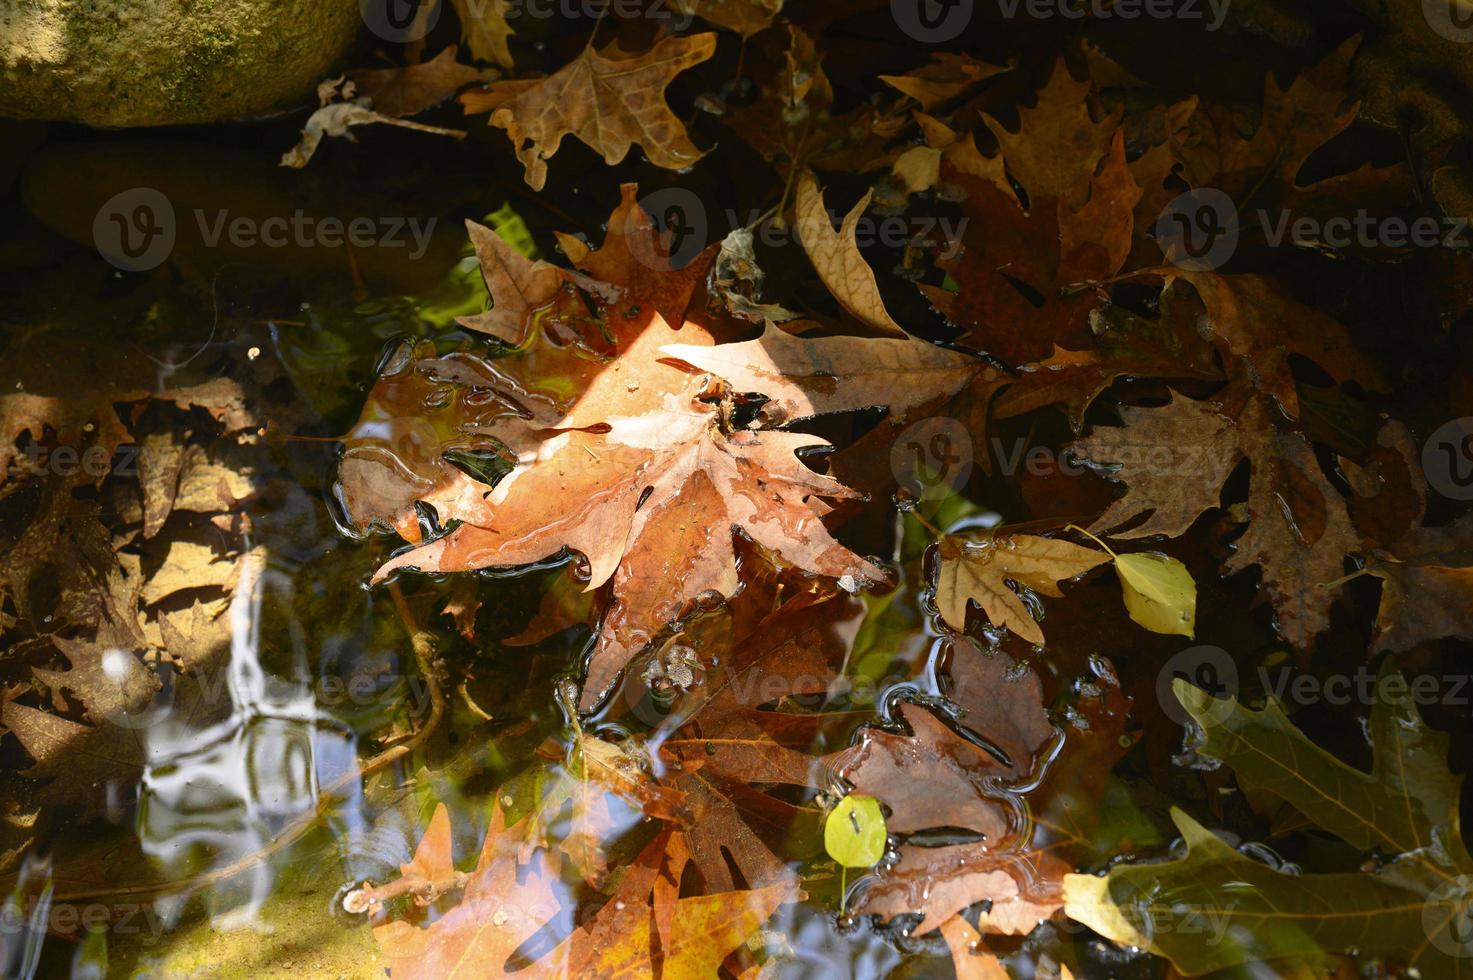 nasse gefallene Herbstahornblätter im Wasser foto